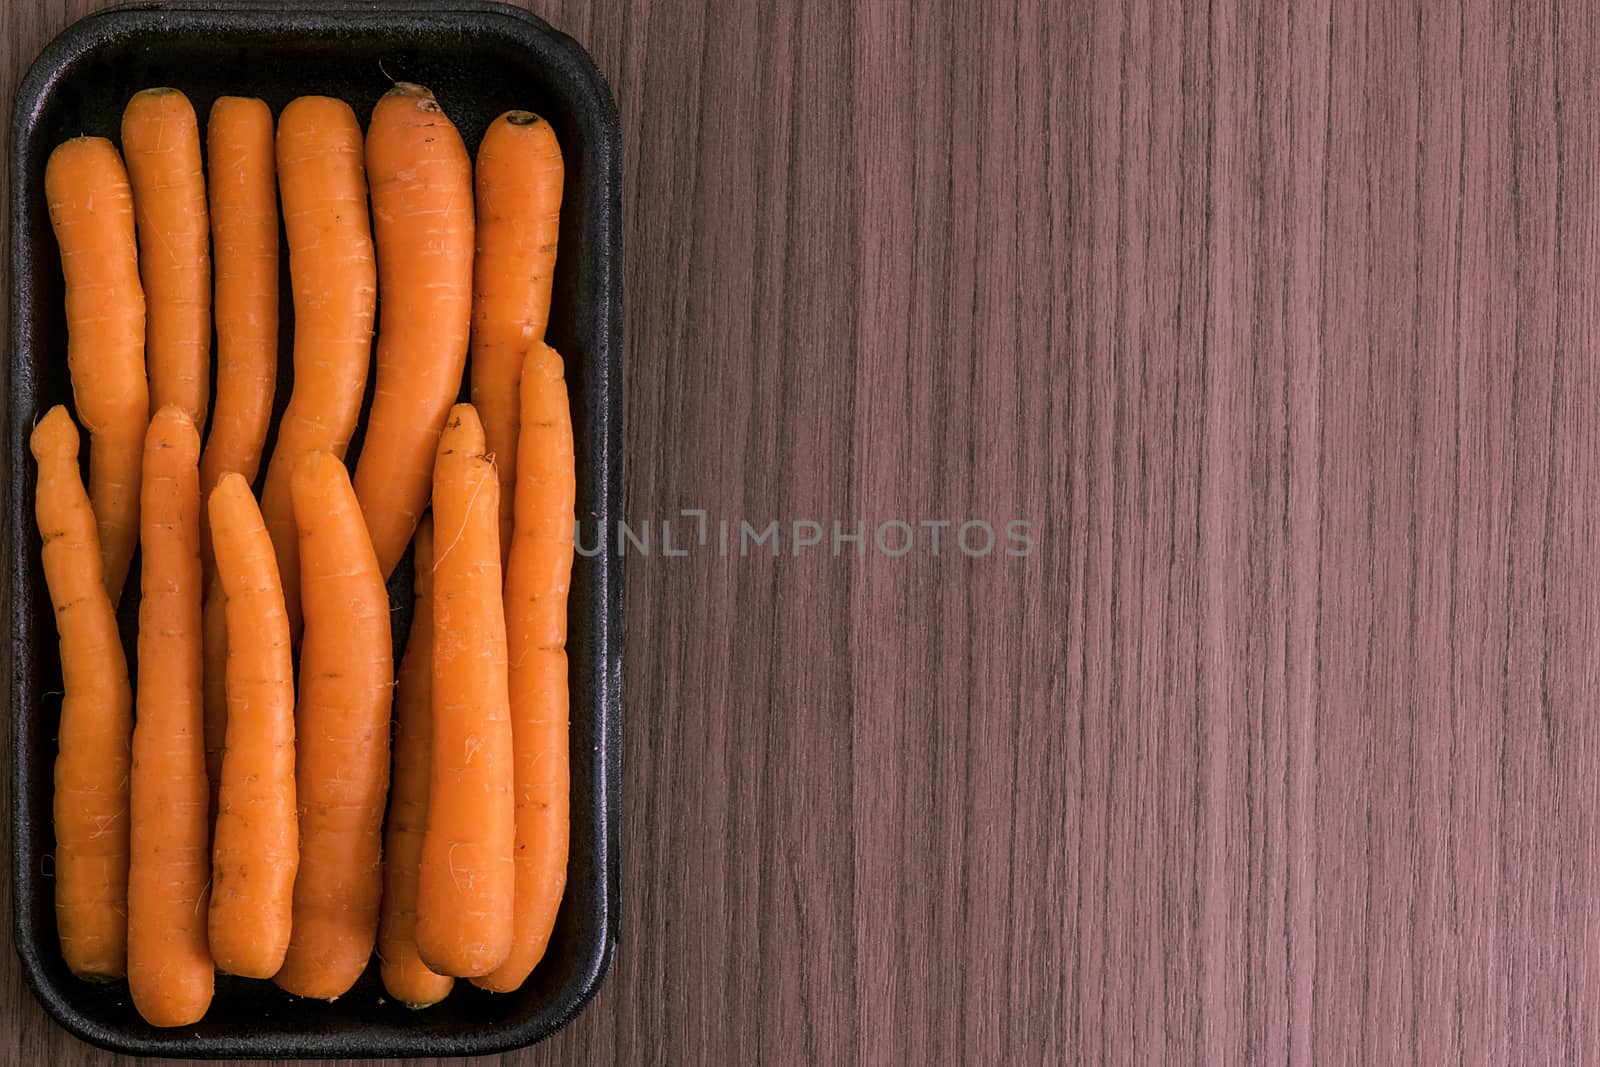 Small carrots by dalomo84